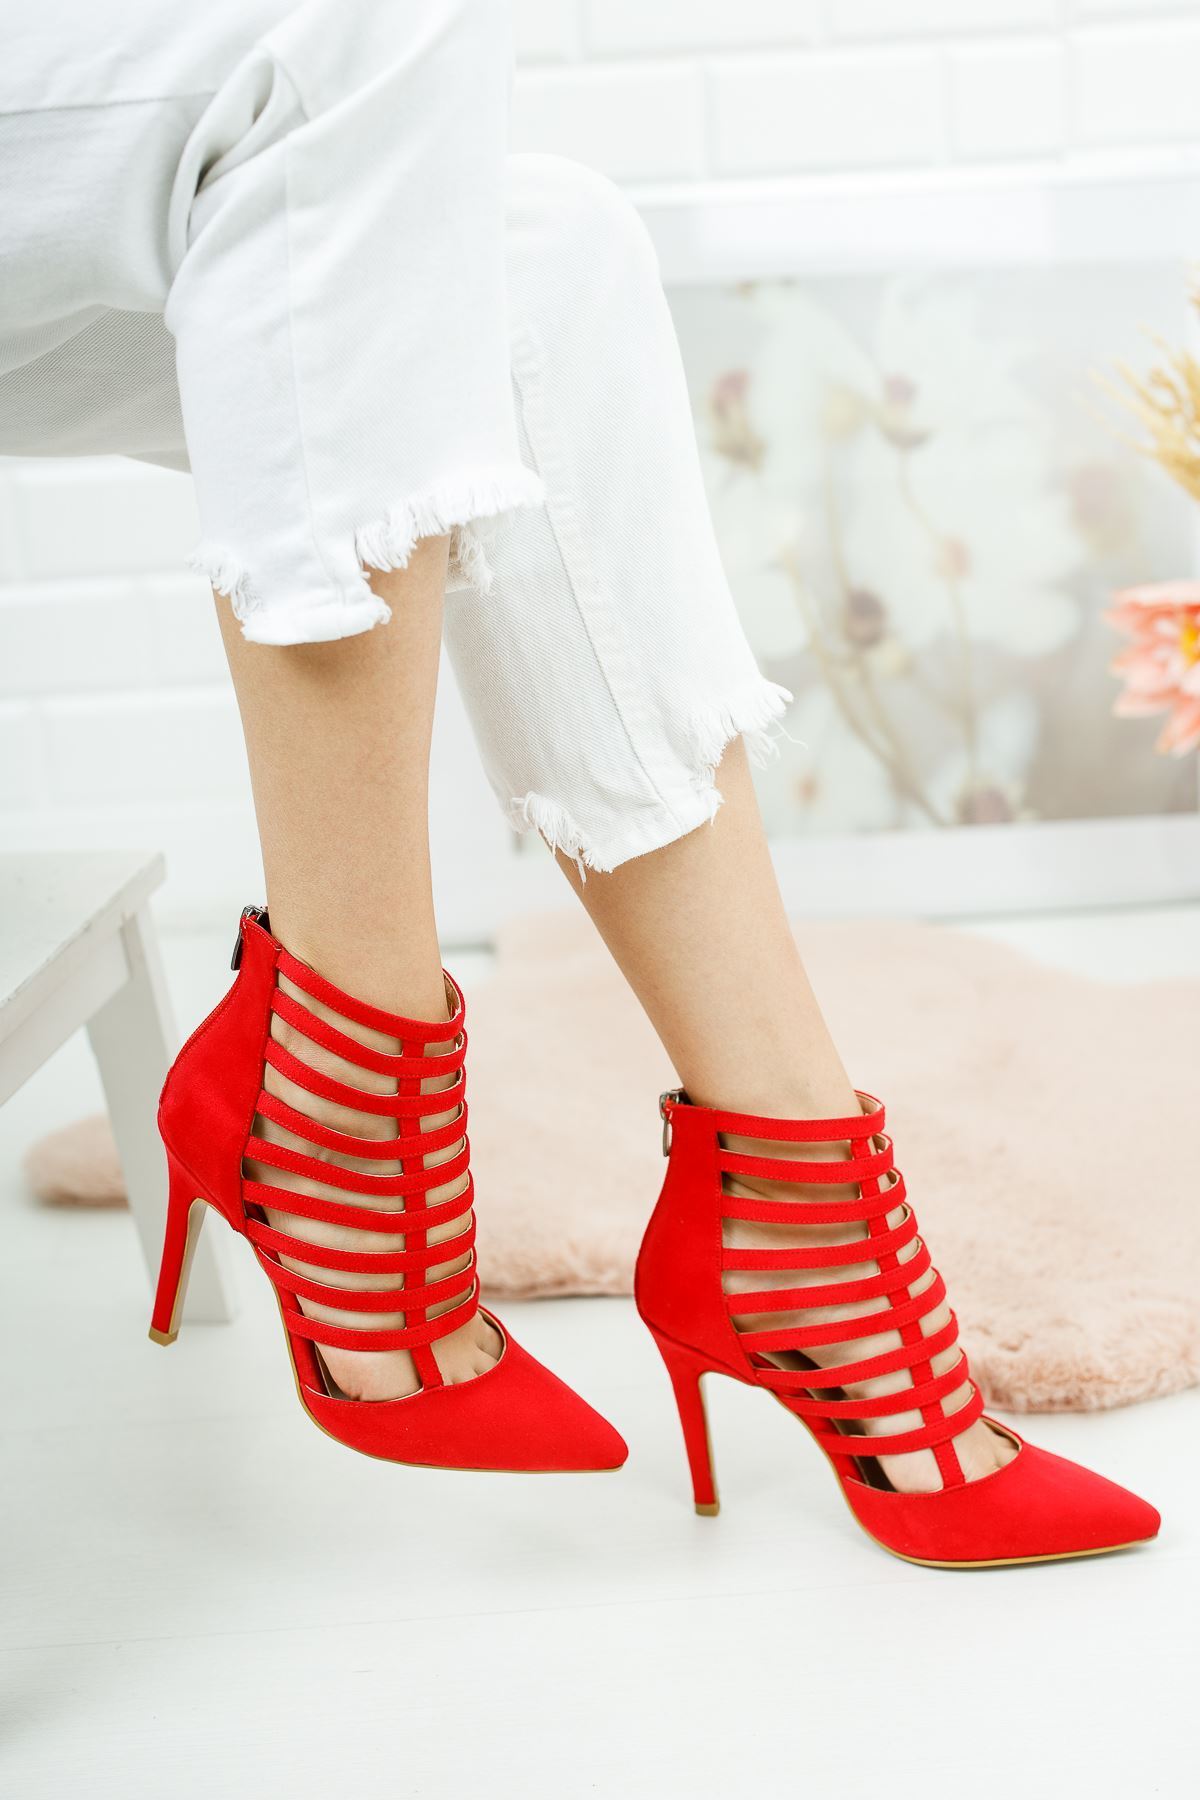 Edgar Kırmızı Süet Kadın Topuklu Ayakkabı